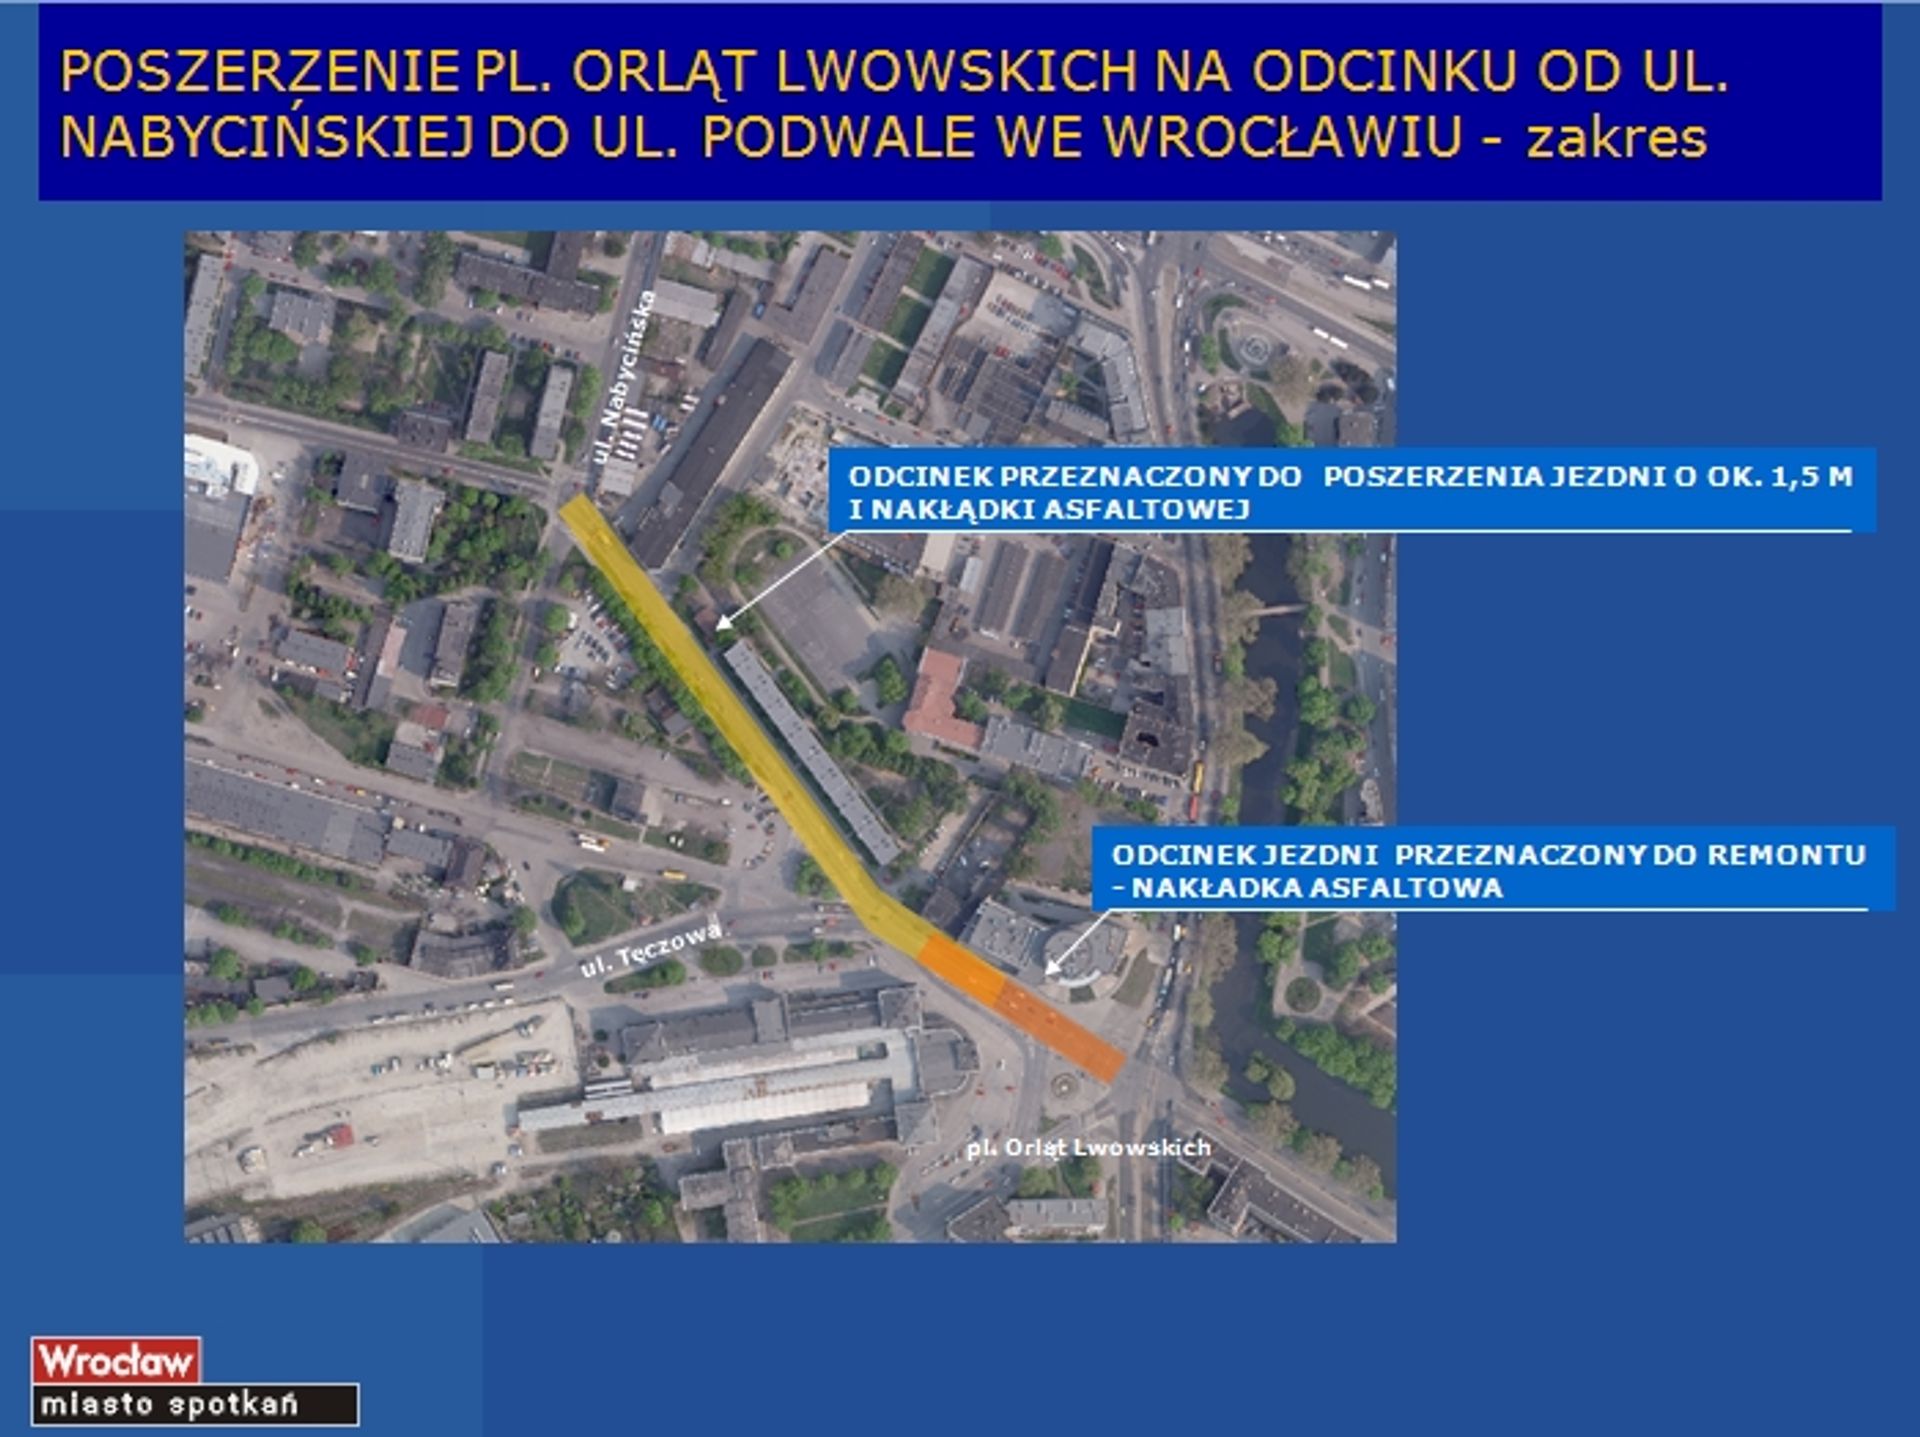  Prawie 6 mln złotych za rozbudowę placu Orląt Lwowskich i budowę 2 sygnalizacji